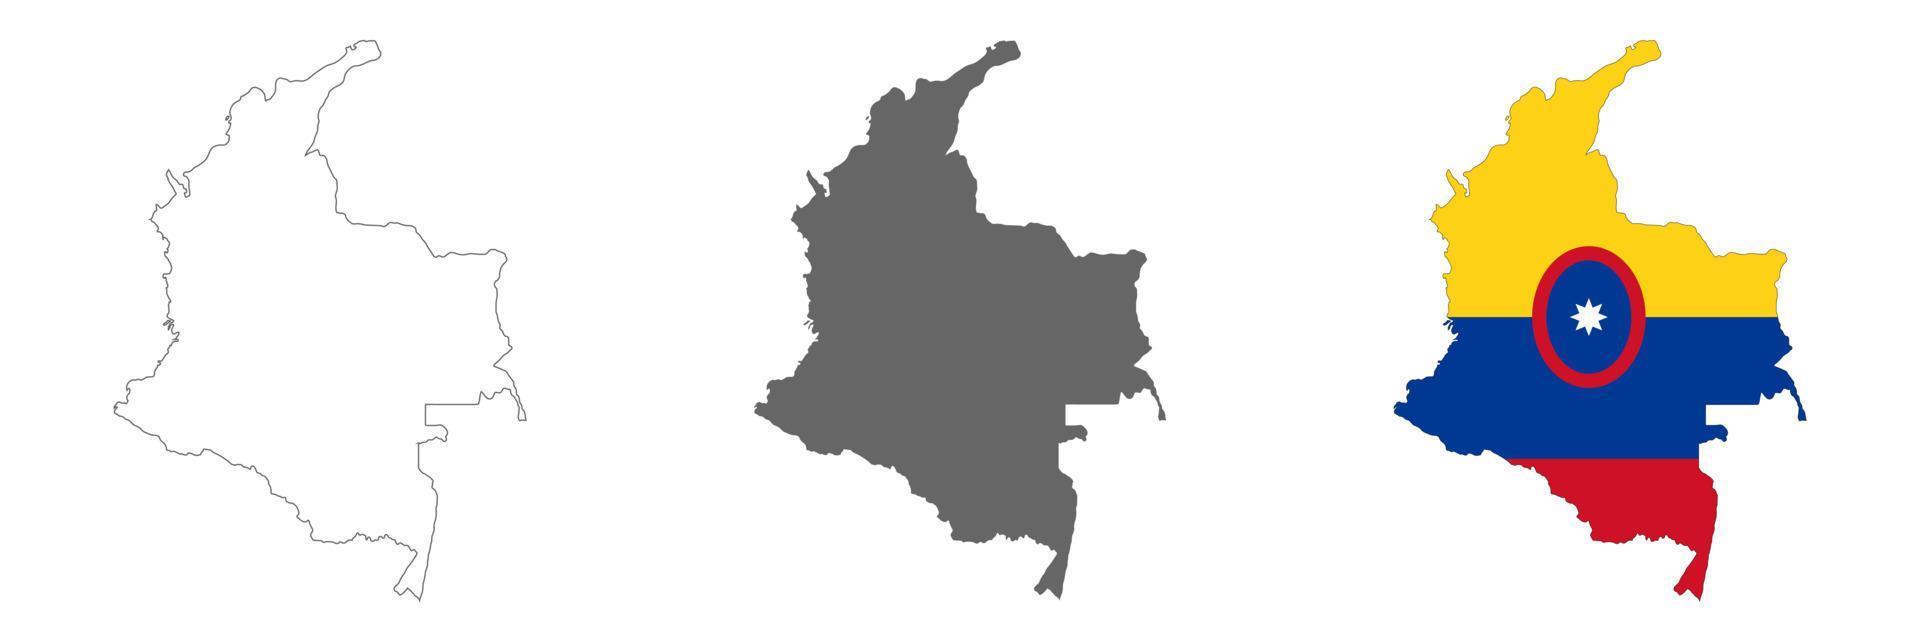 zeer gedetailleerde kaart van colombia met randen geïsoleerd op de achtergrond vector